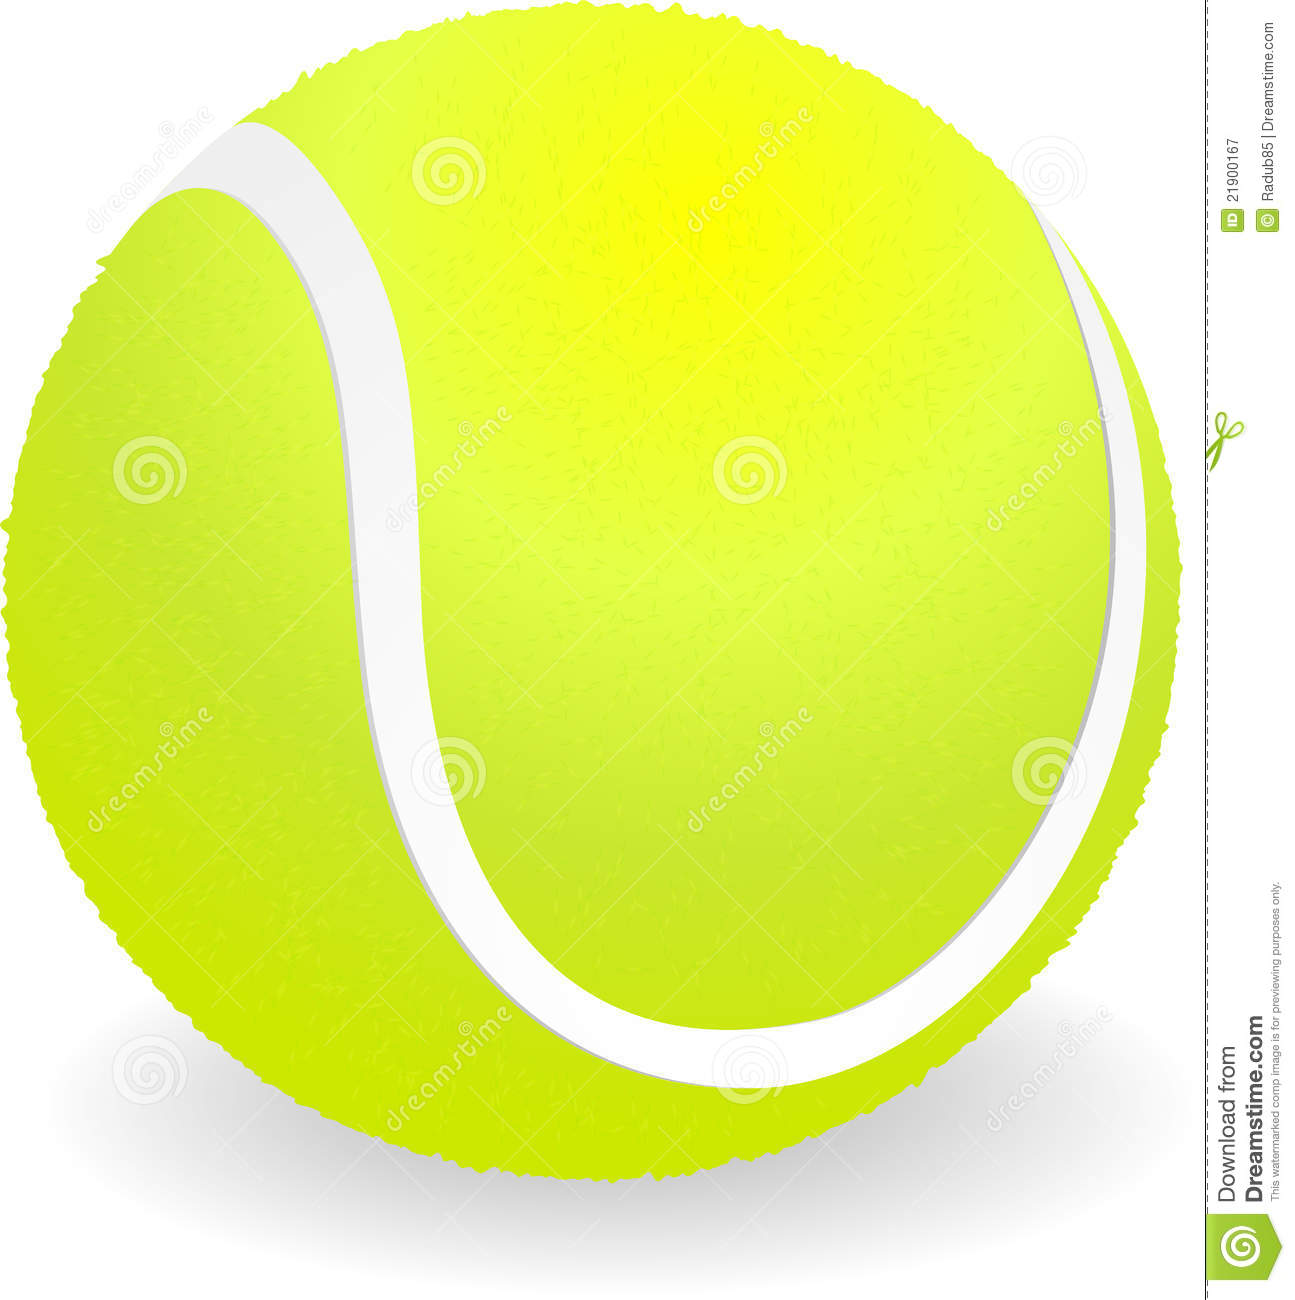 Tennis ball clip art at vecto